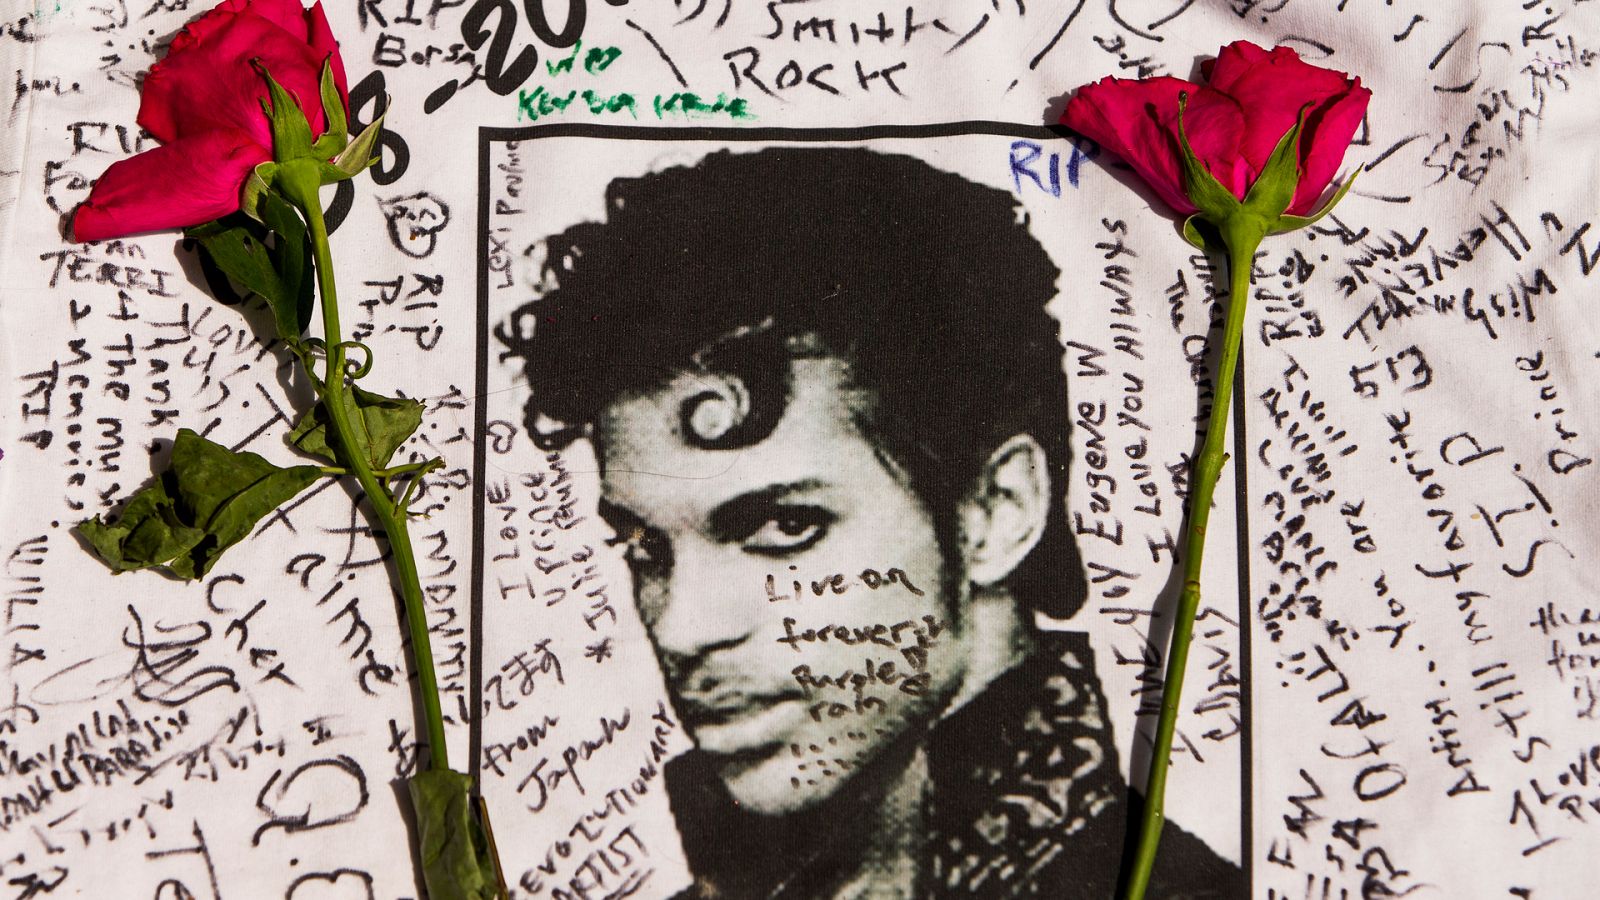 Prince murió el 21 de abril de 2016 de una sobredosis de fentanilo en Minneapolis.